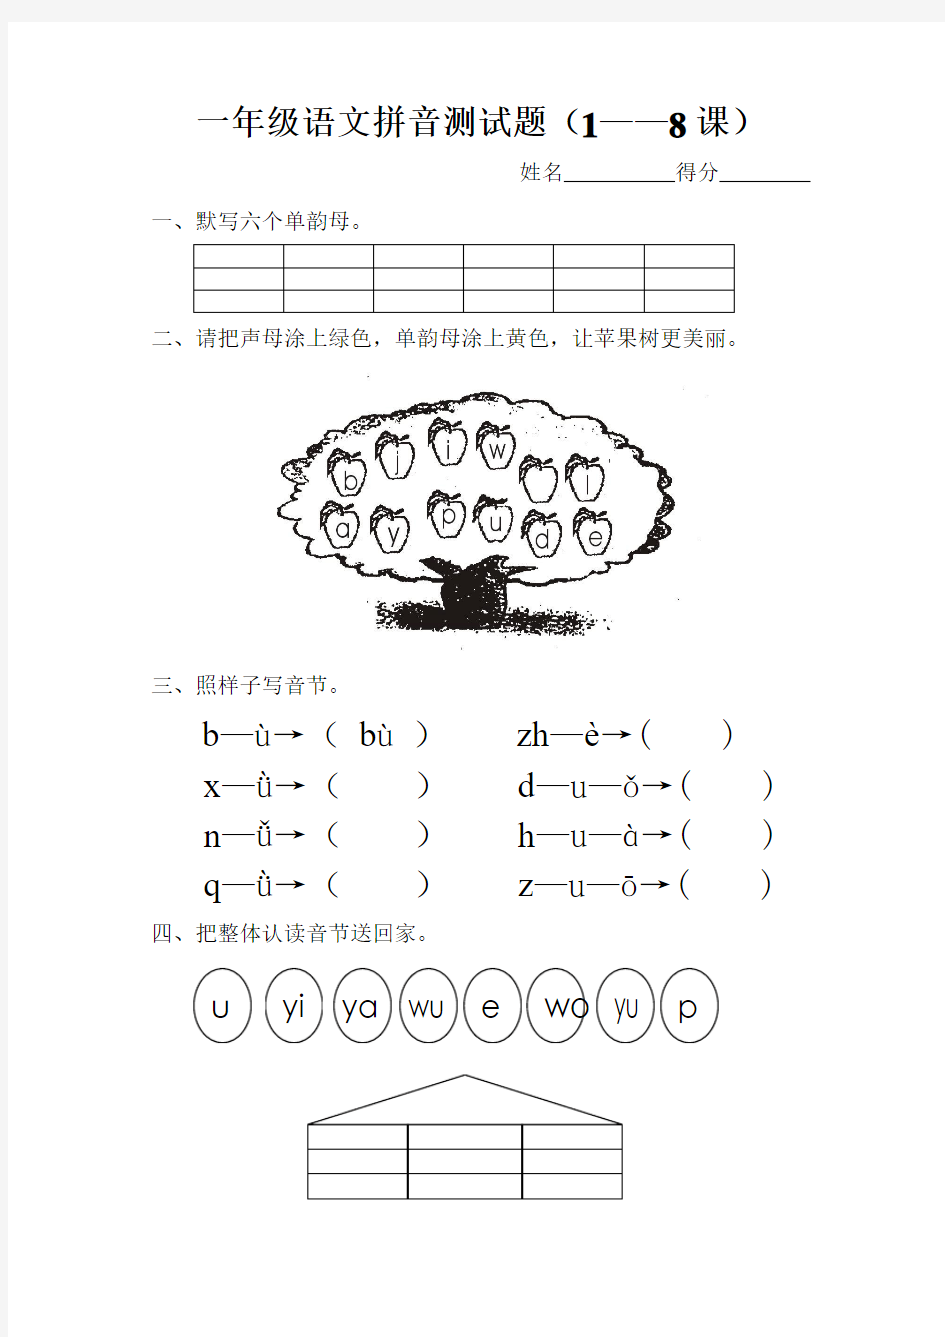 一年级语文拼音1-8课测试卷(杨青)